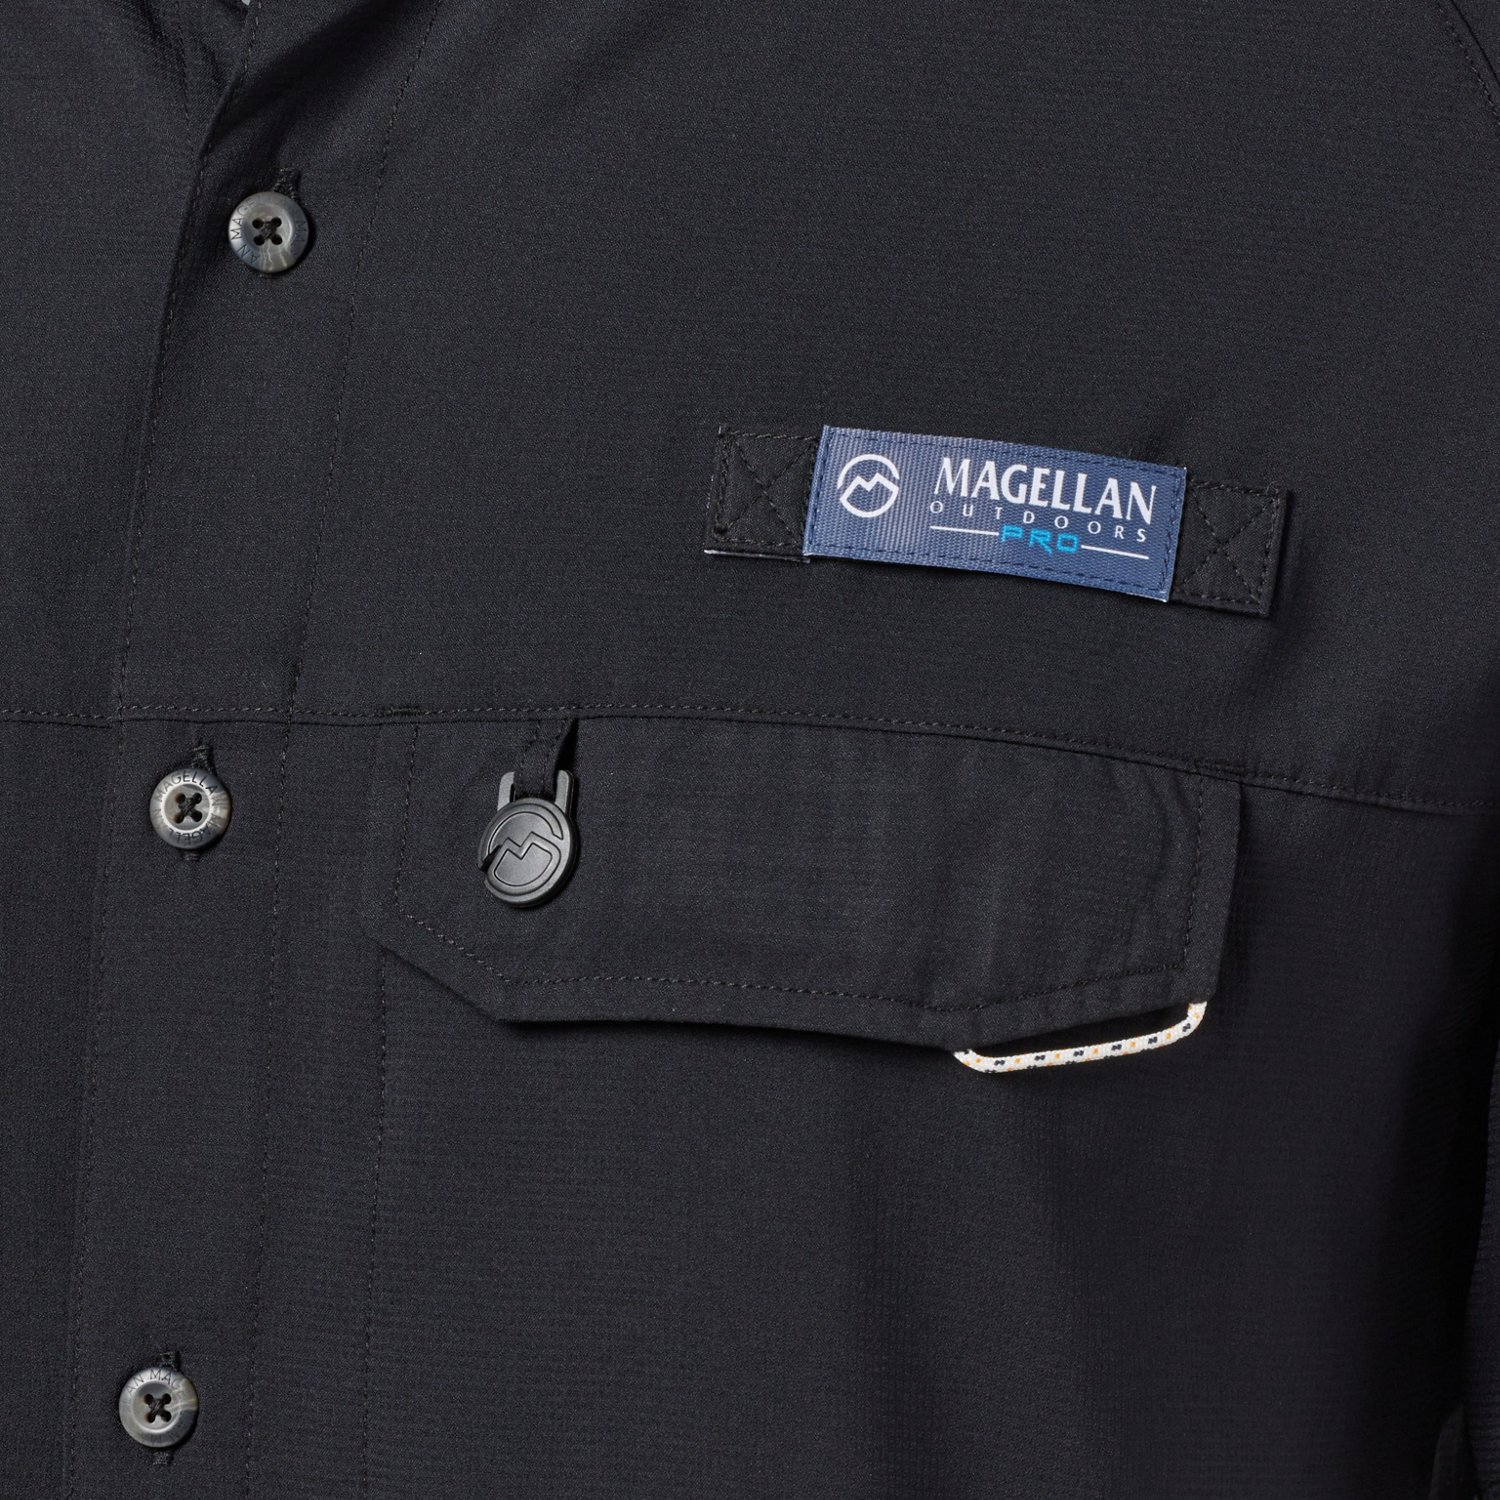 FISHING SHIRT. Mossy Oak - Magellan Pro Fishing Shirt New w/Tags UPF 50 - XL